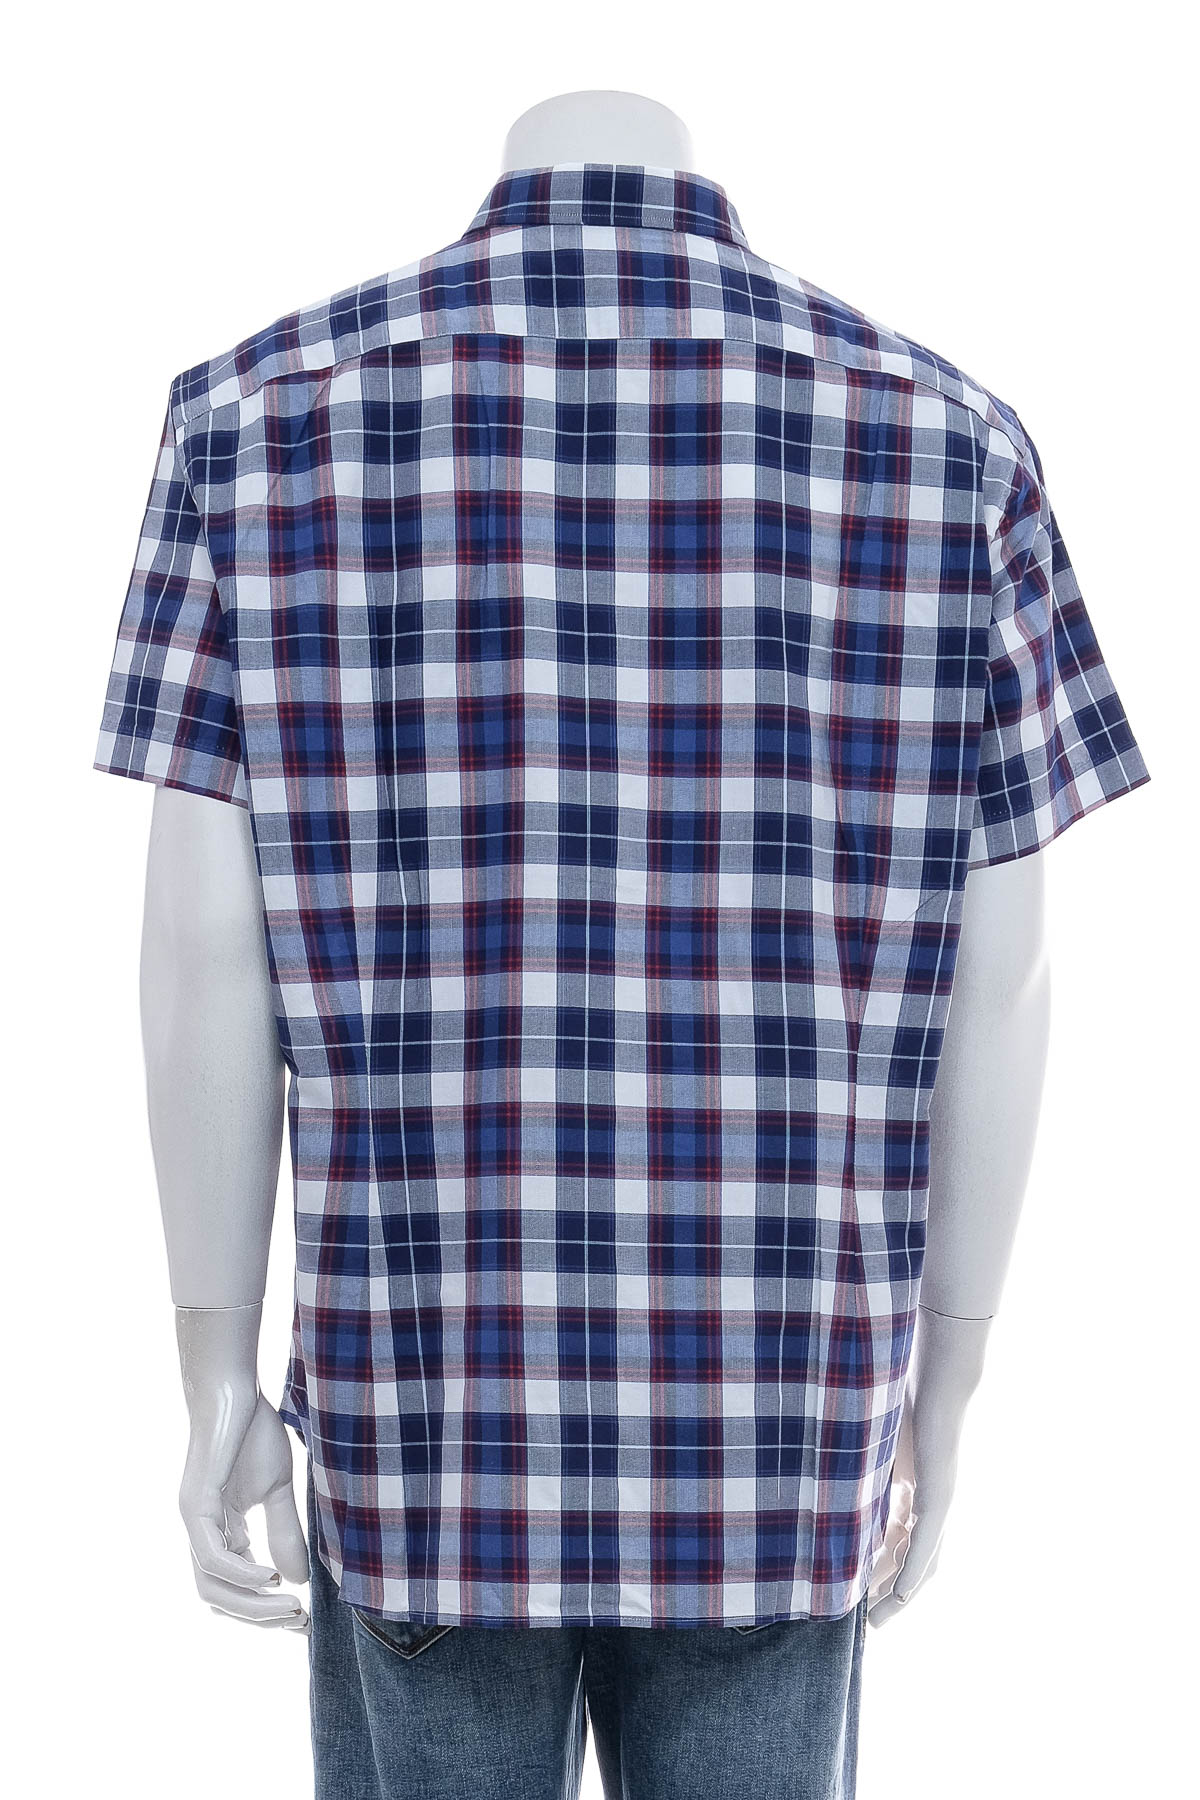 Men's shirt - Van Laack - 1